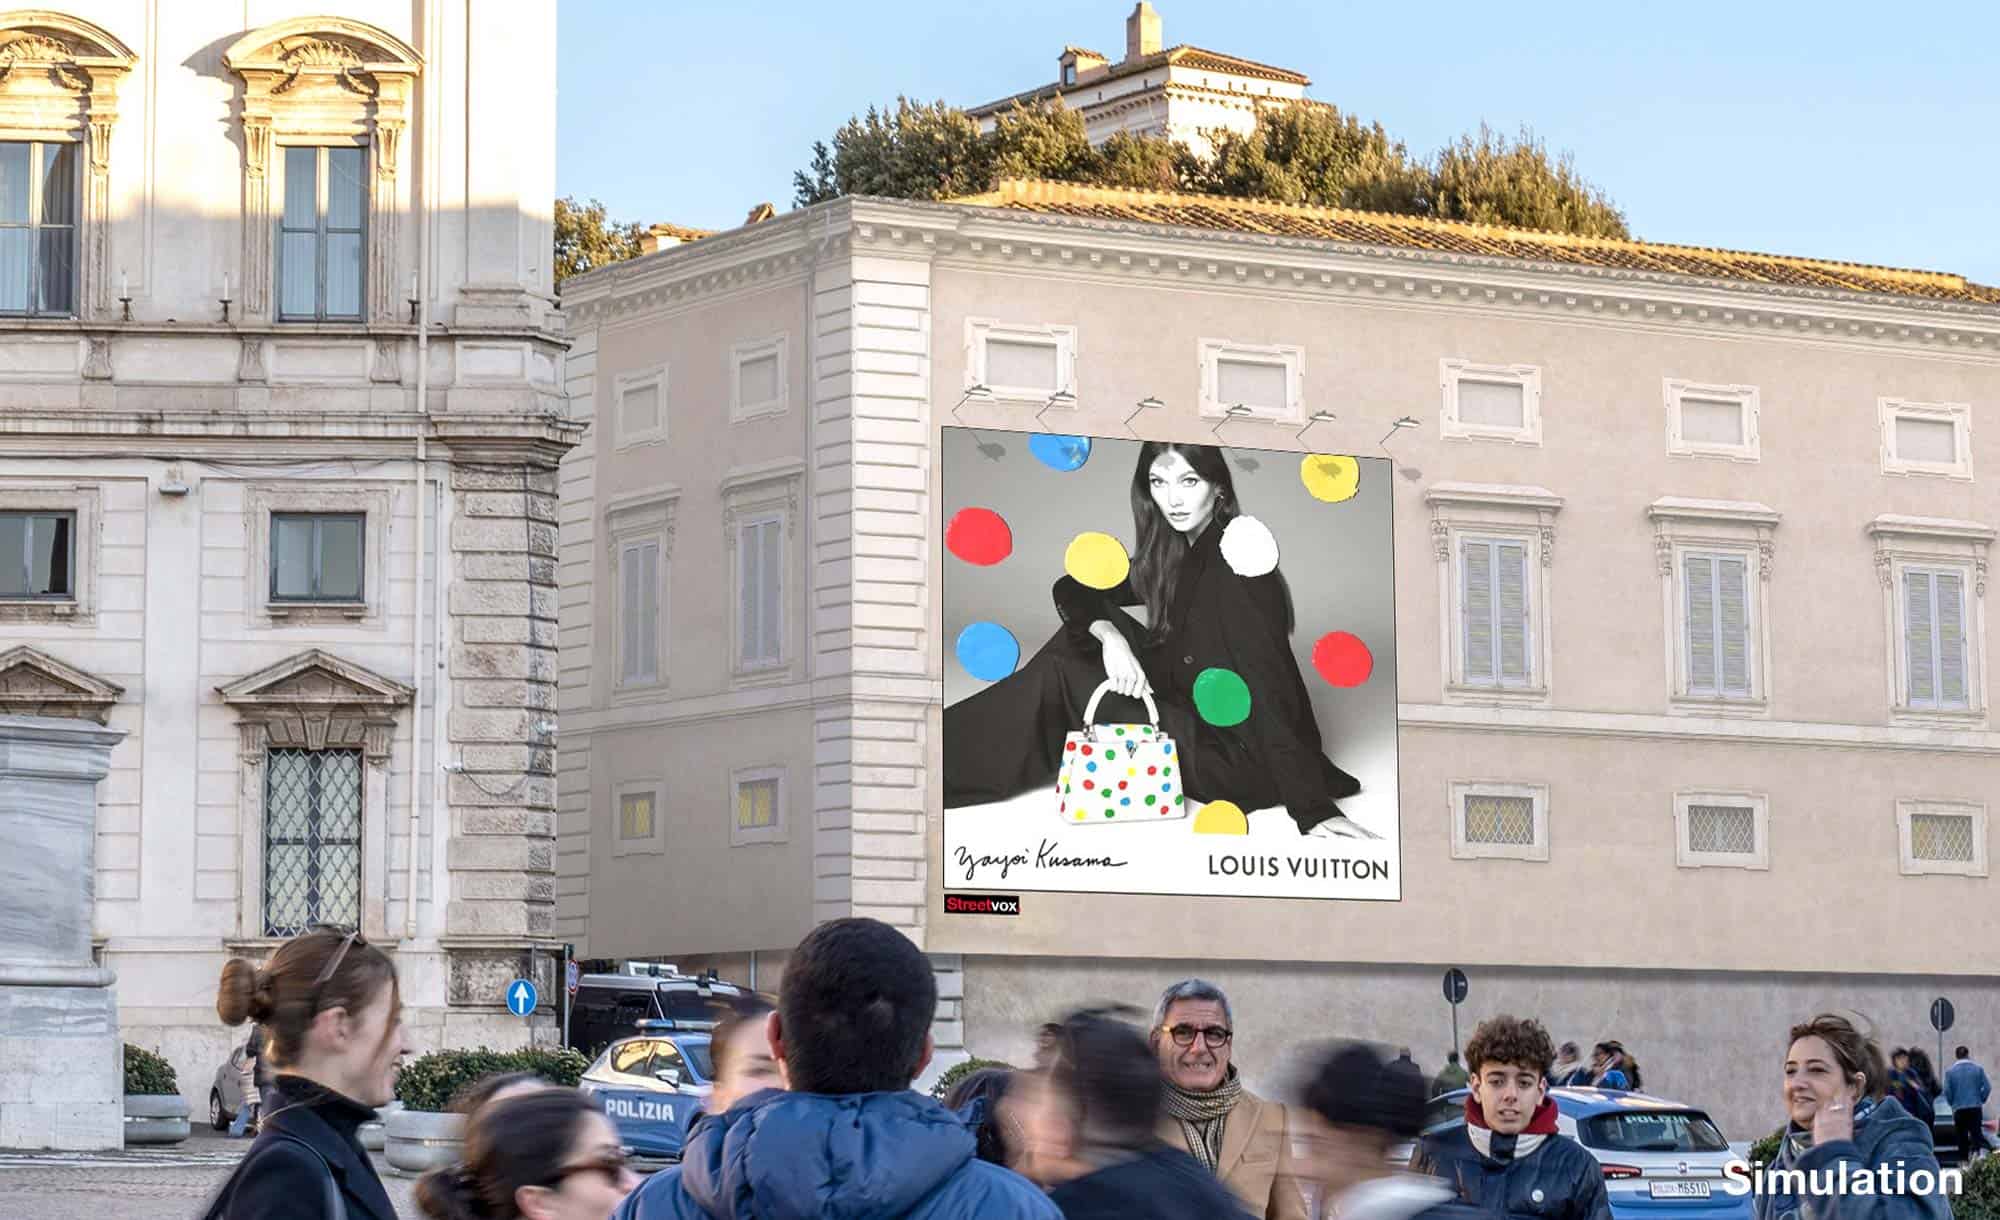 billboard in Casino dell'Aurora, Rome with Louis Vuitton (fashion)